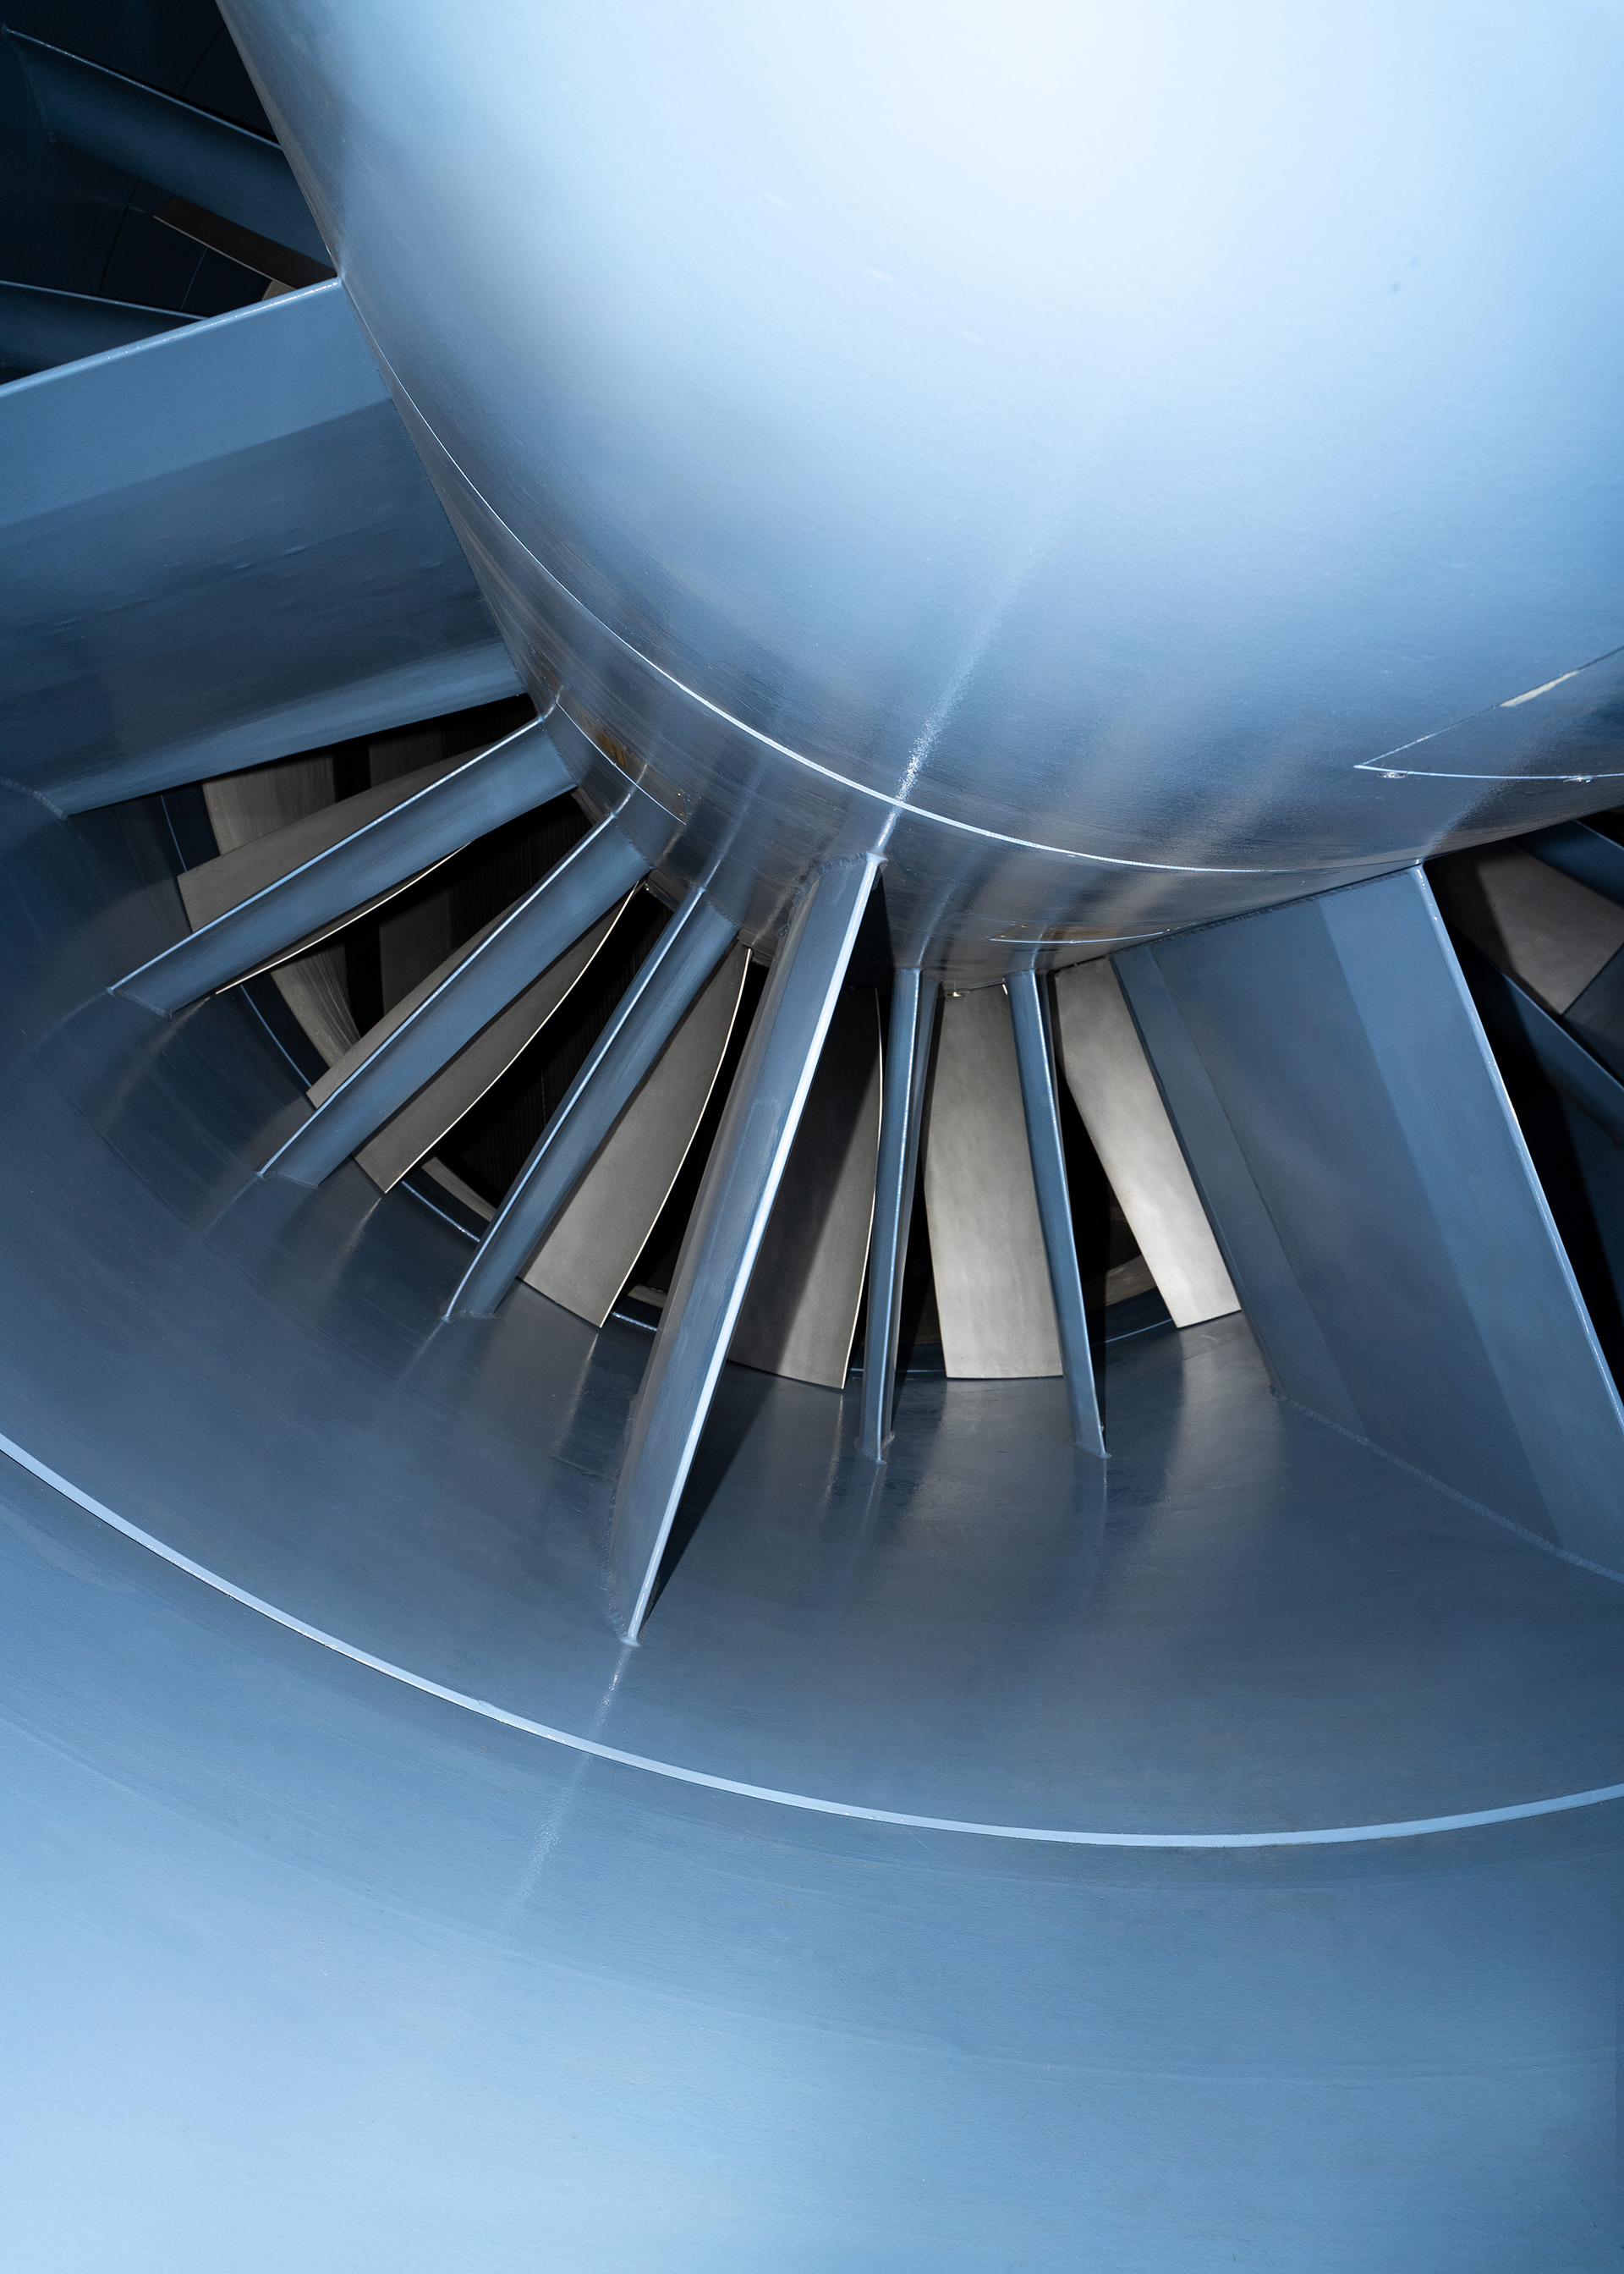  Gros plan de la turbine à rotor de la soufflerie aéroacoustique Audi.